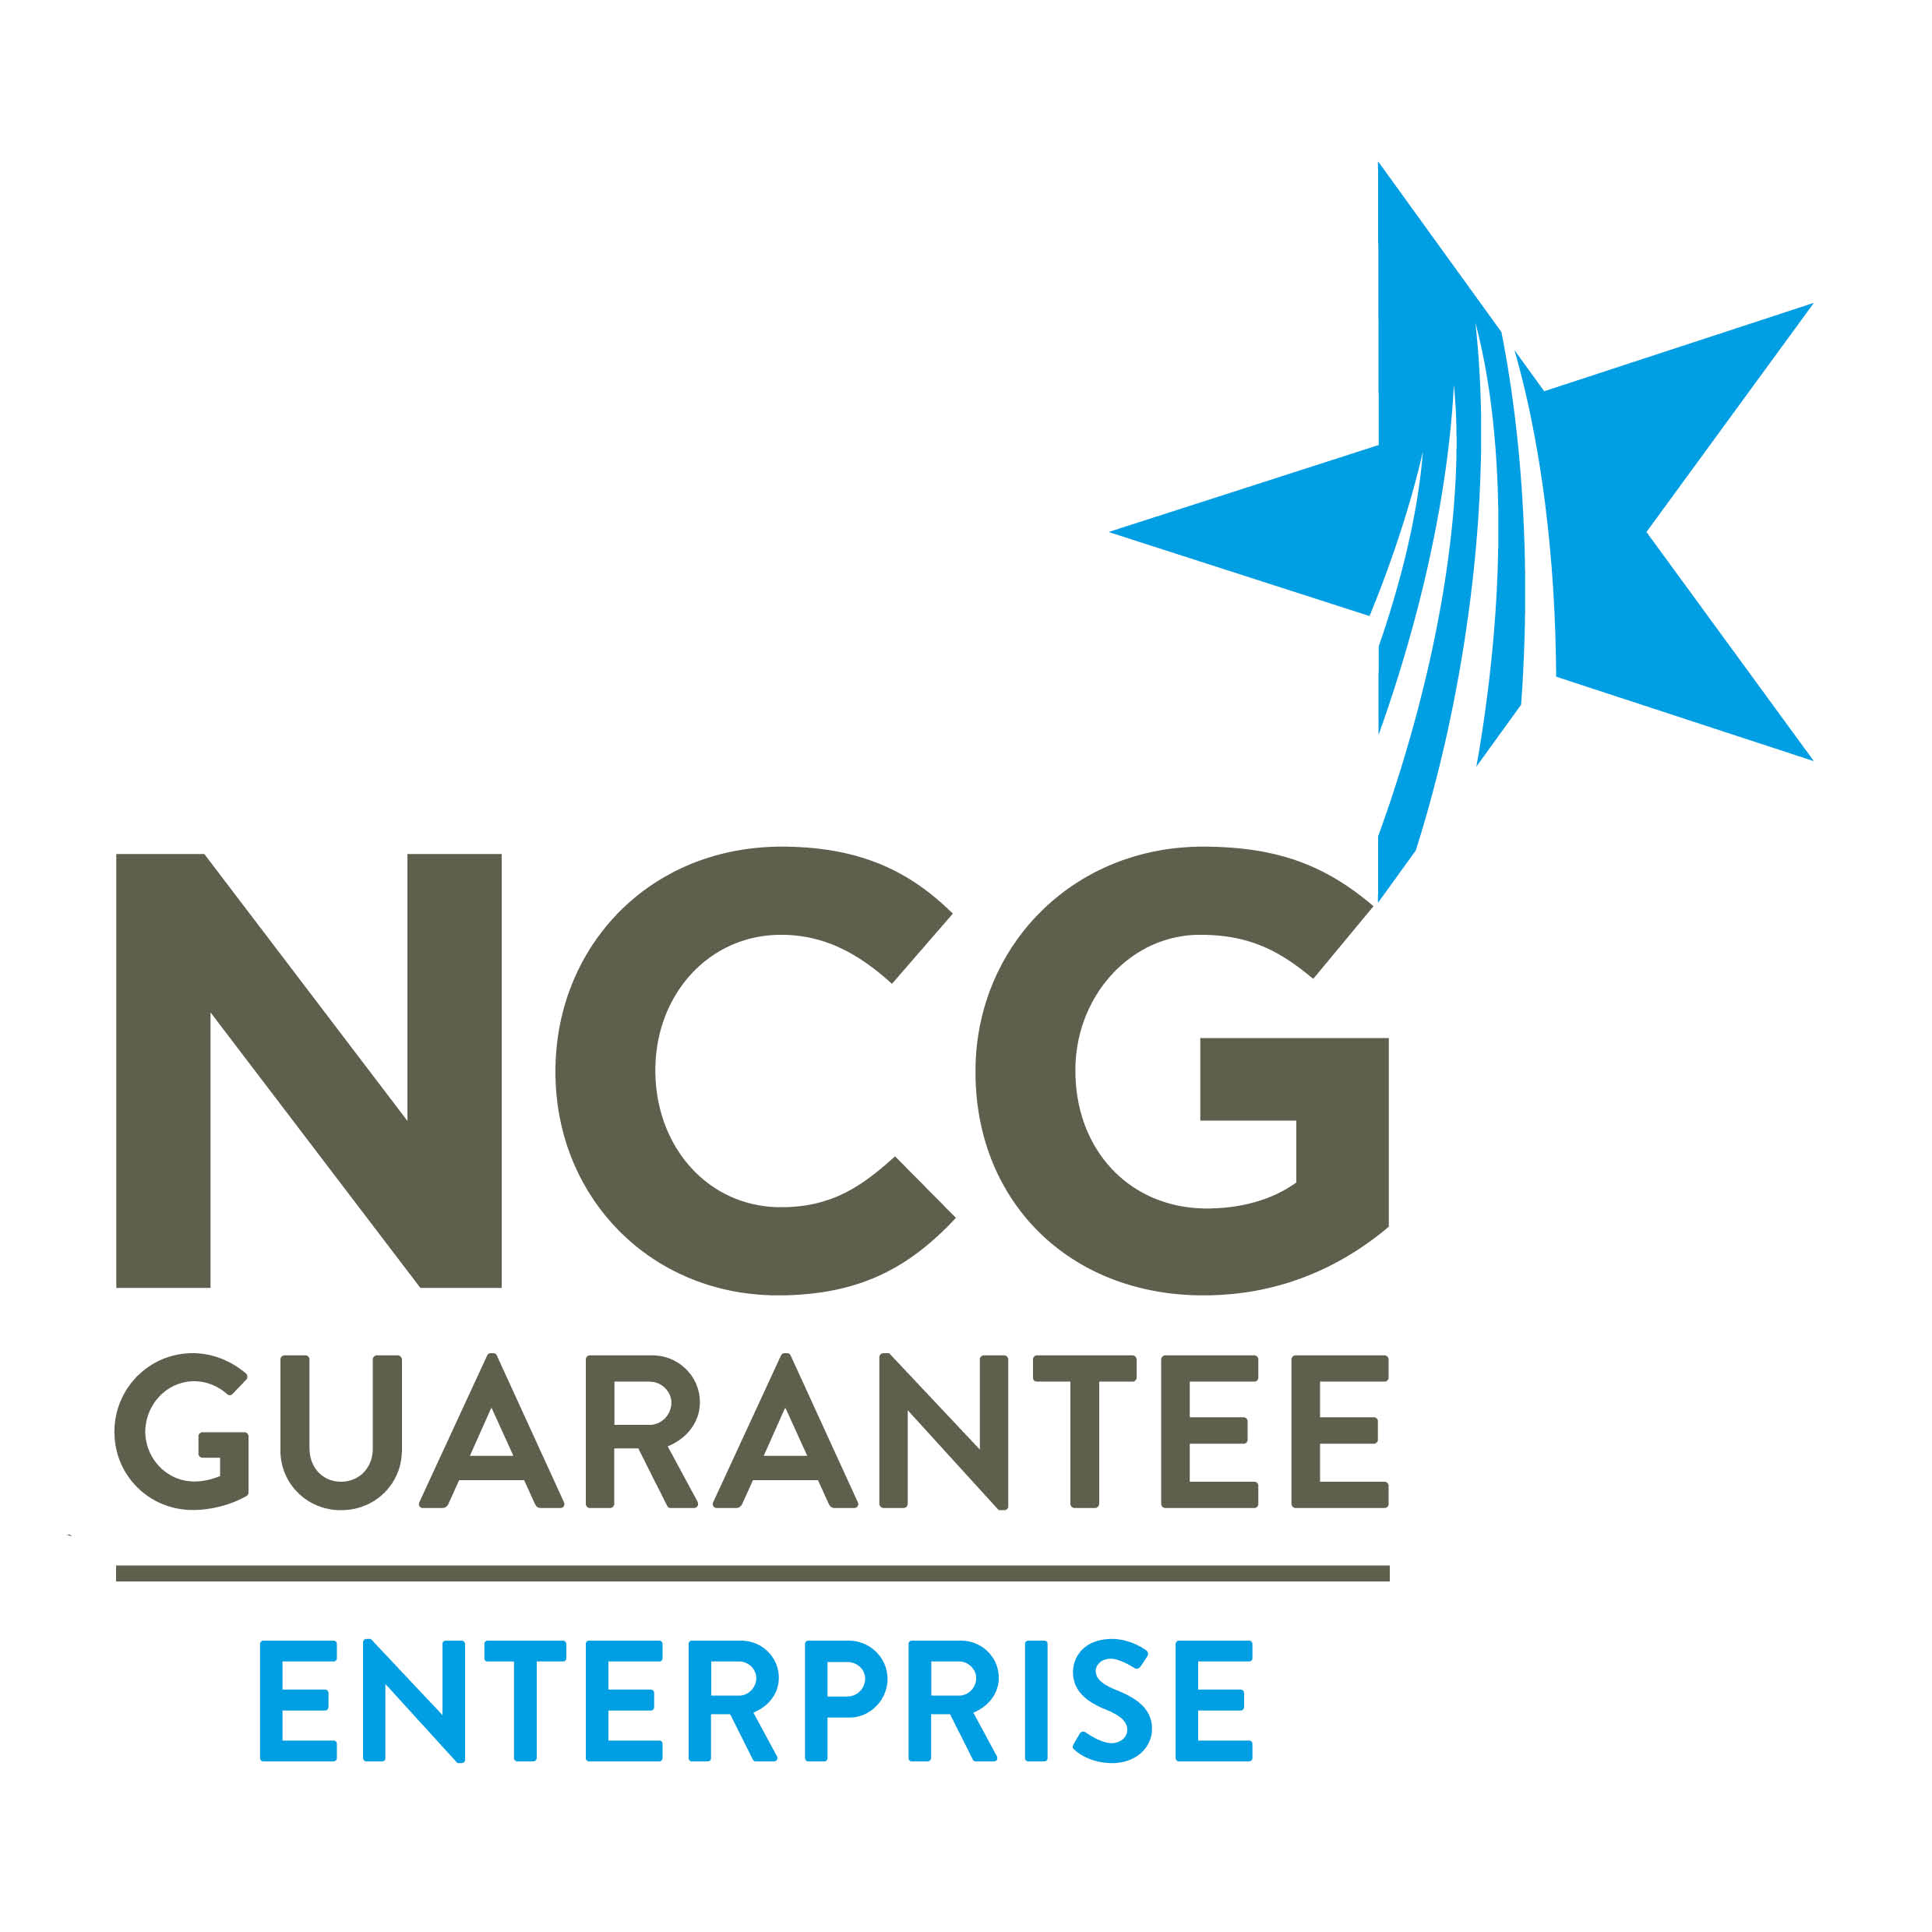 NCG Guarantee Enterprise Logo